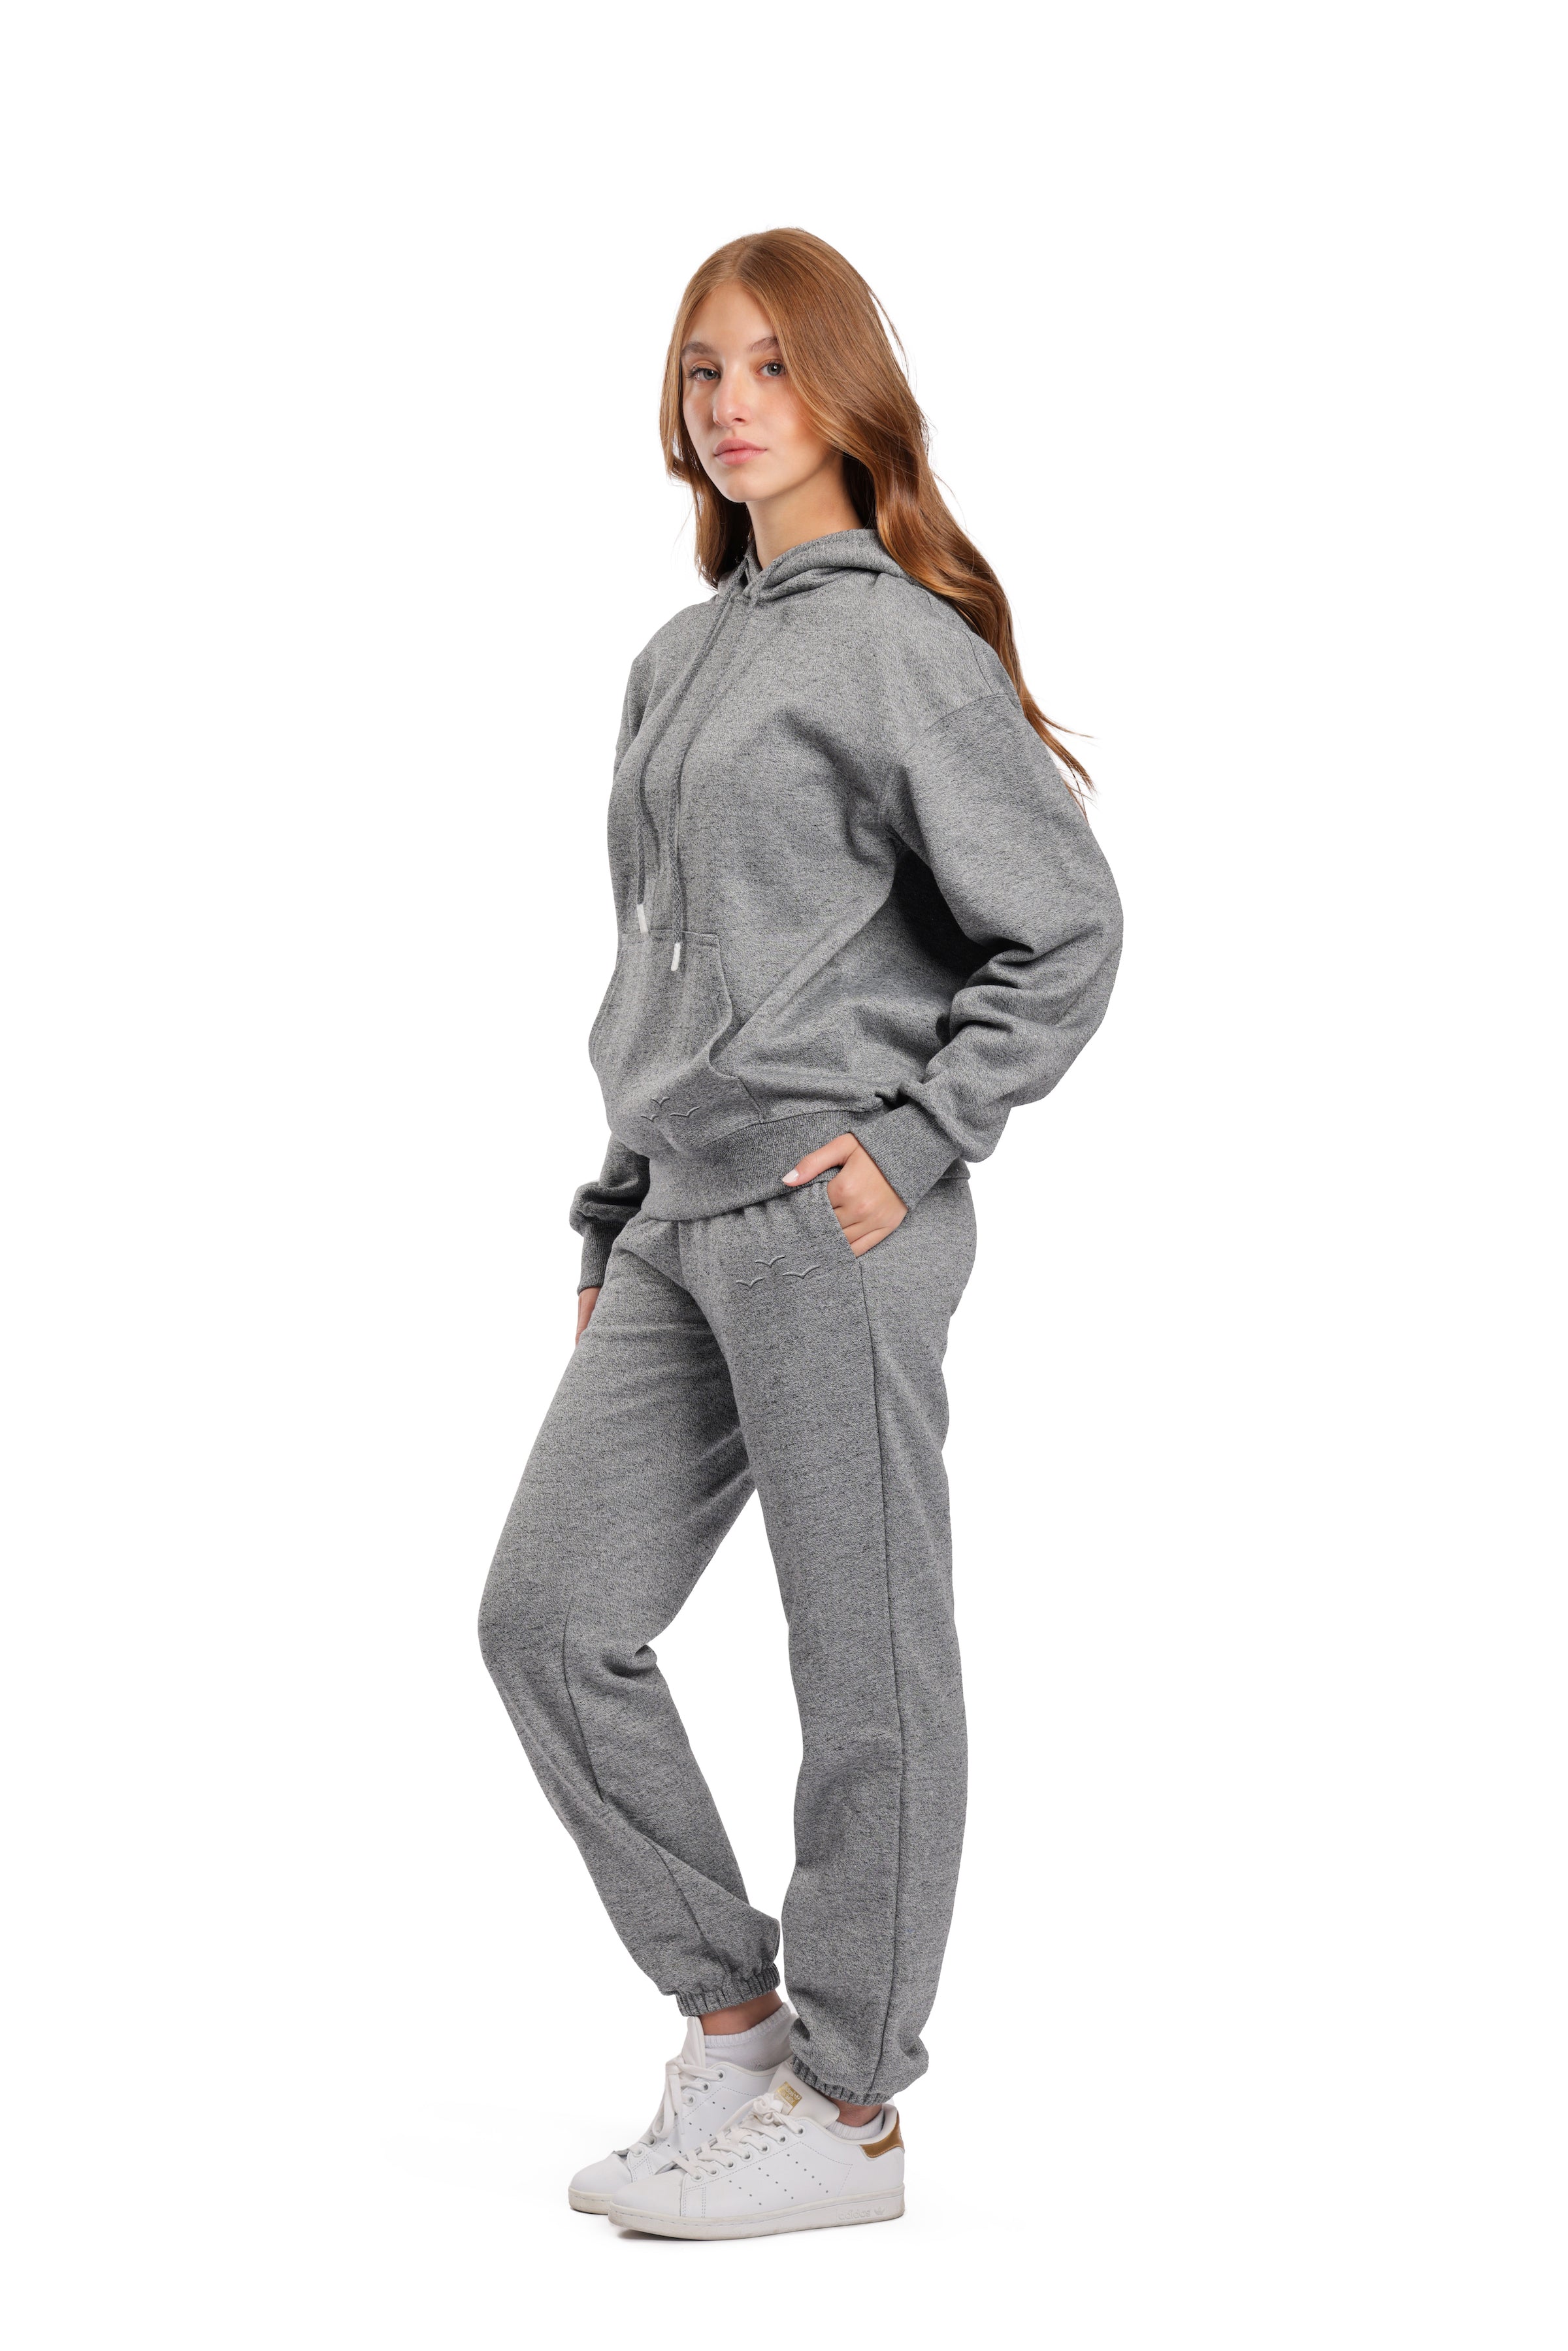 Men's Premium Fleece Relaxed Sweatsuit Set in Vintage Pearl Grey